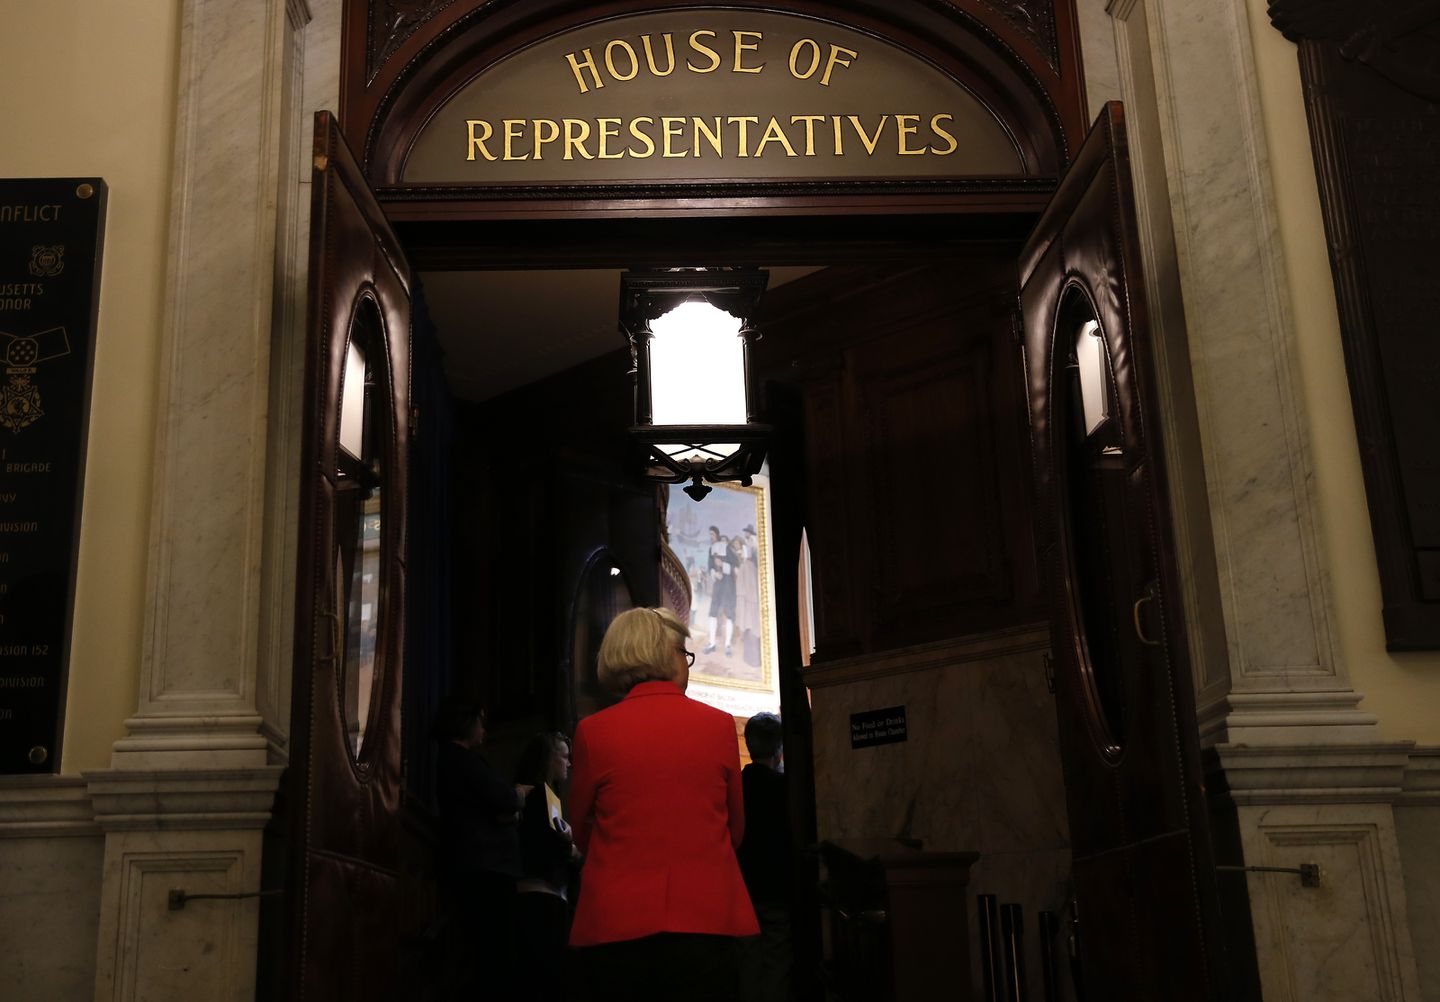 ऐतिहासिक वोट में, मास हाउस ने कानूनी आव्रजन स्थिति के बिना निवासियों के लिए ड्राइवर के लाइसेंस की अनुमति देने के लिए बिल पारित किया